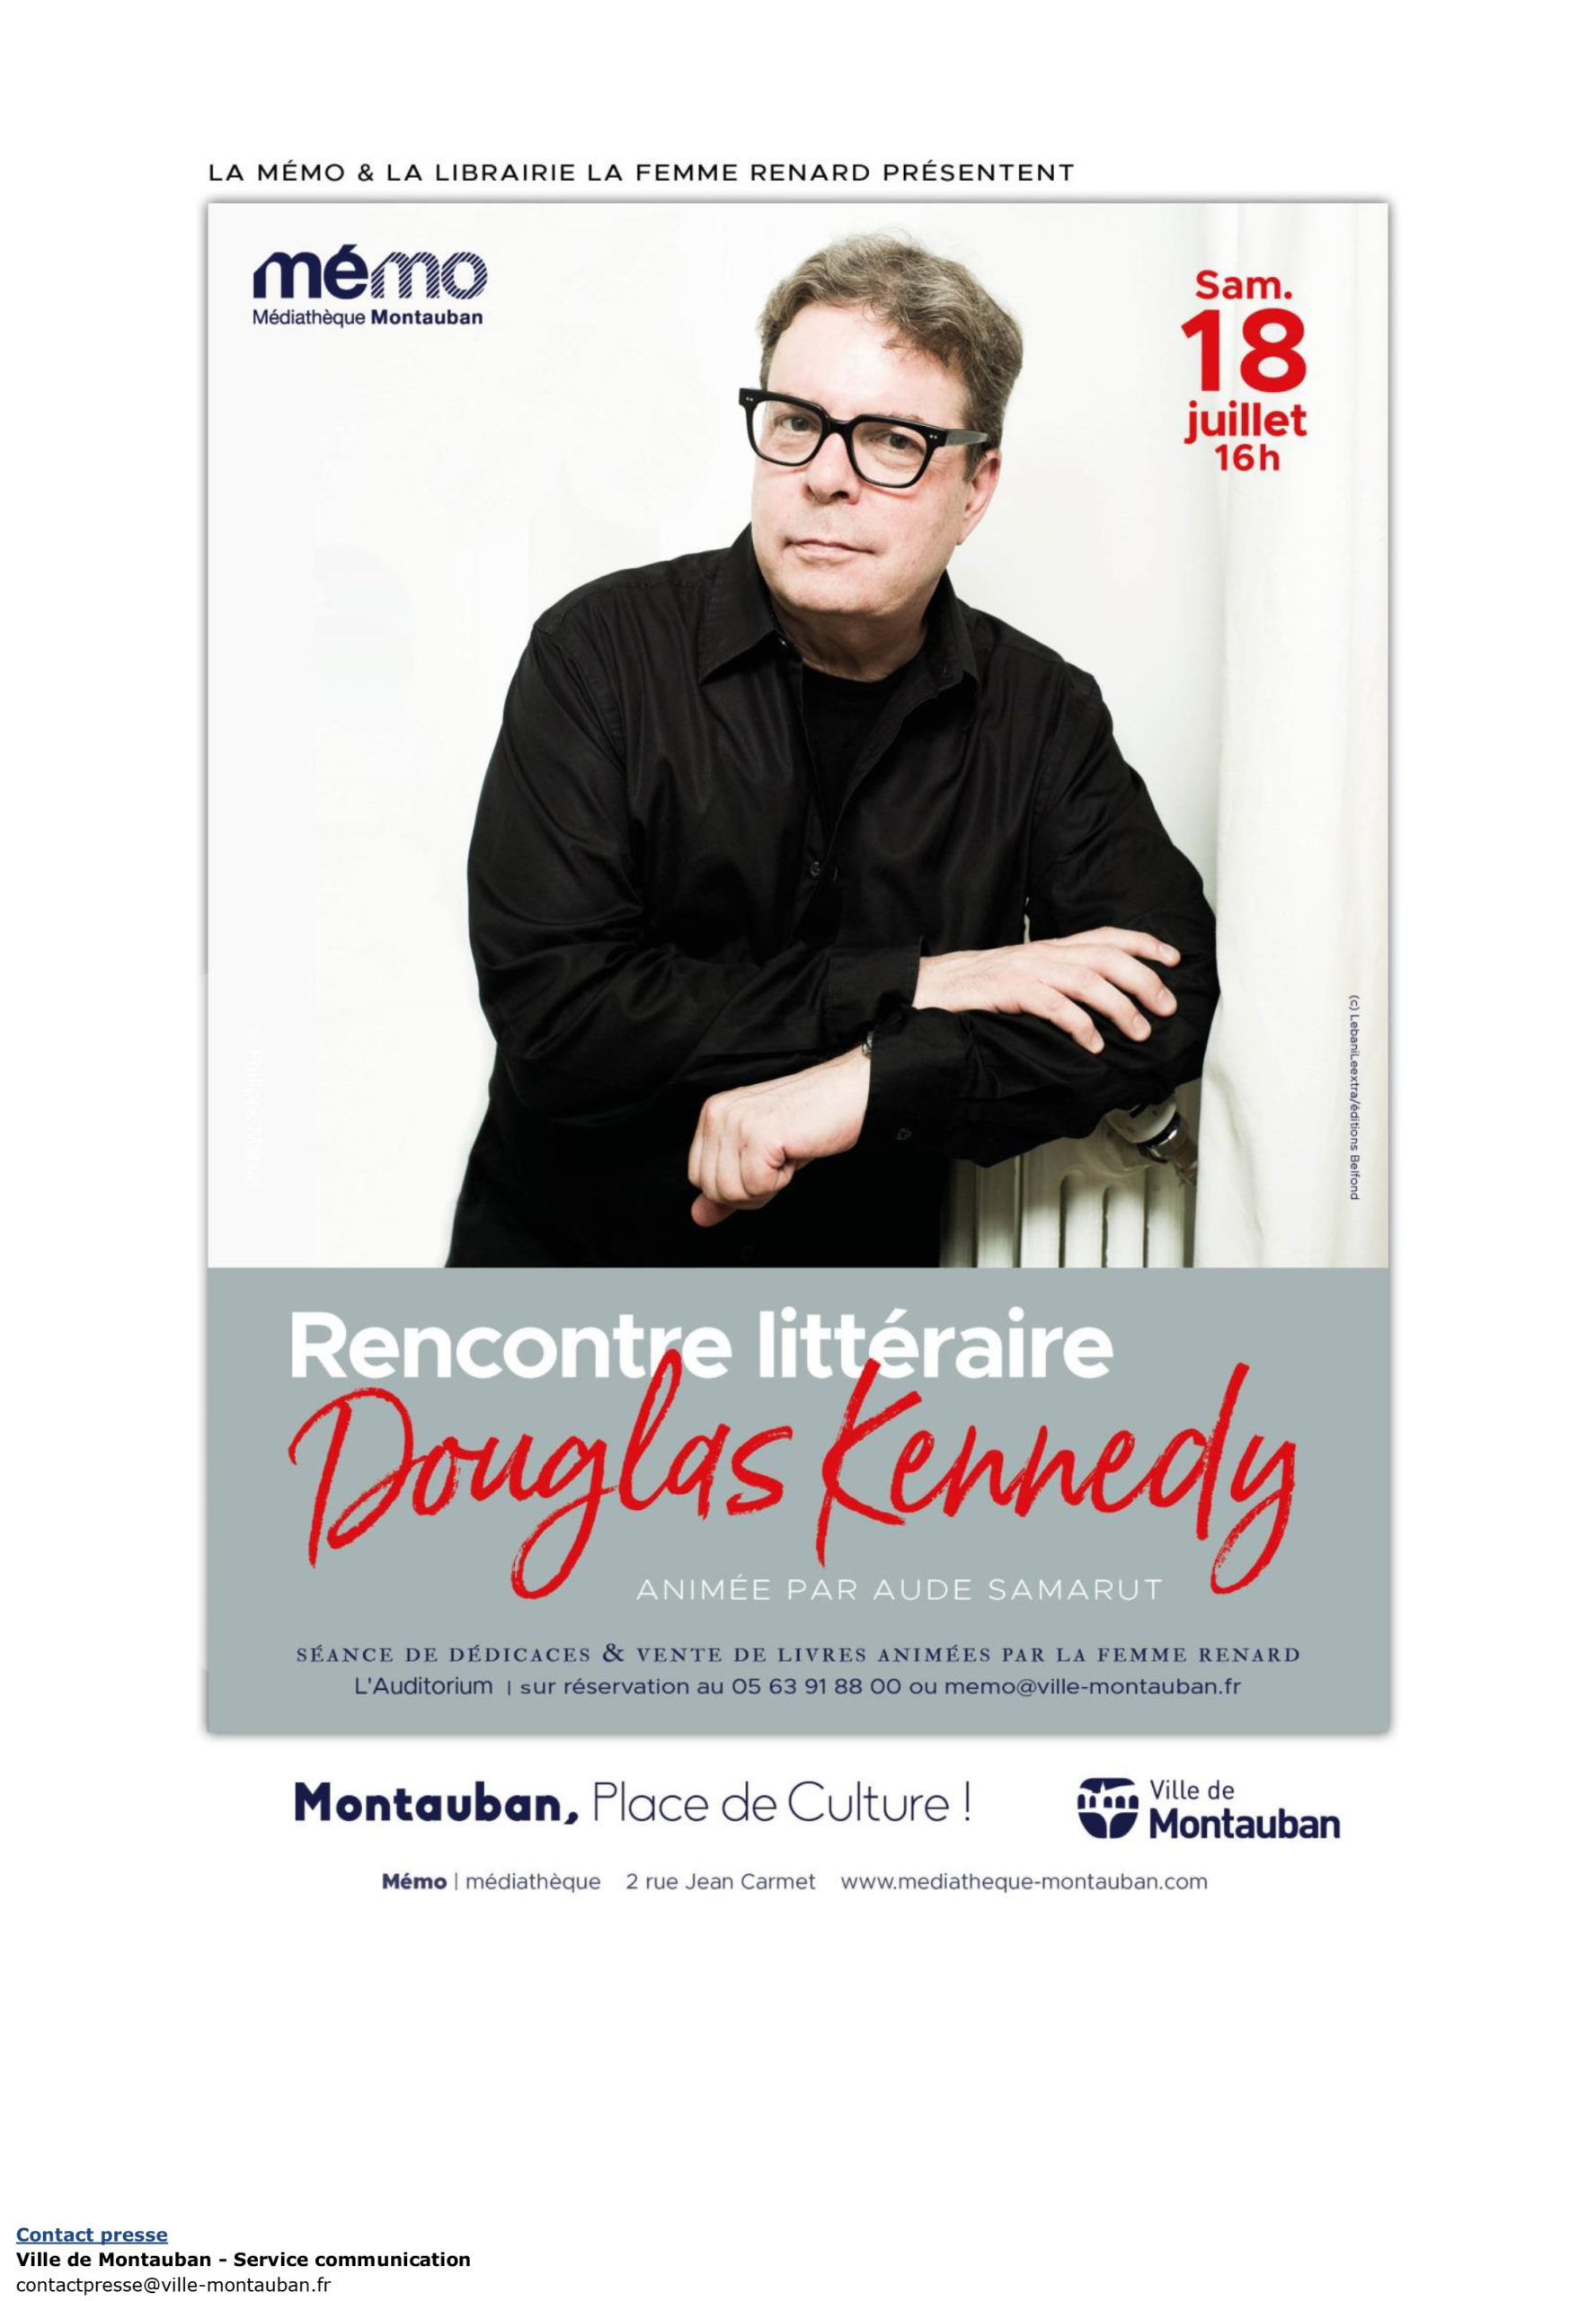 COMMUNIQUÉ DE PRESSE: Rencontre littéraire avec Douglas Kennedy au théâtre Olympe de Gouges le samedi 18 juillet 2020 à 16h